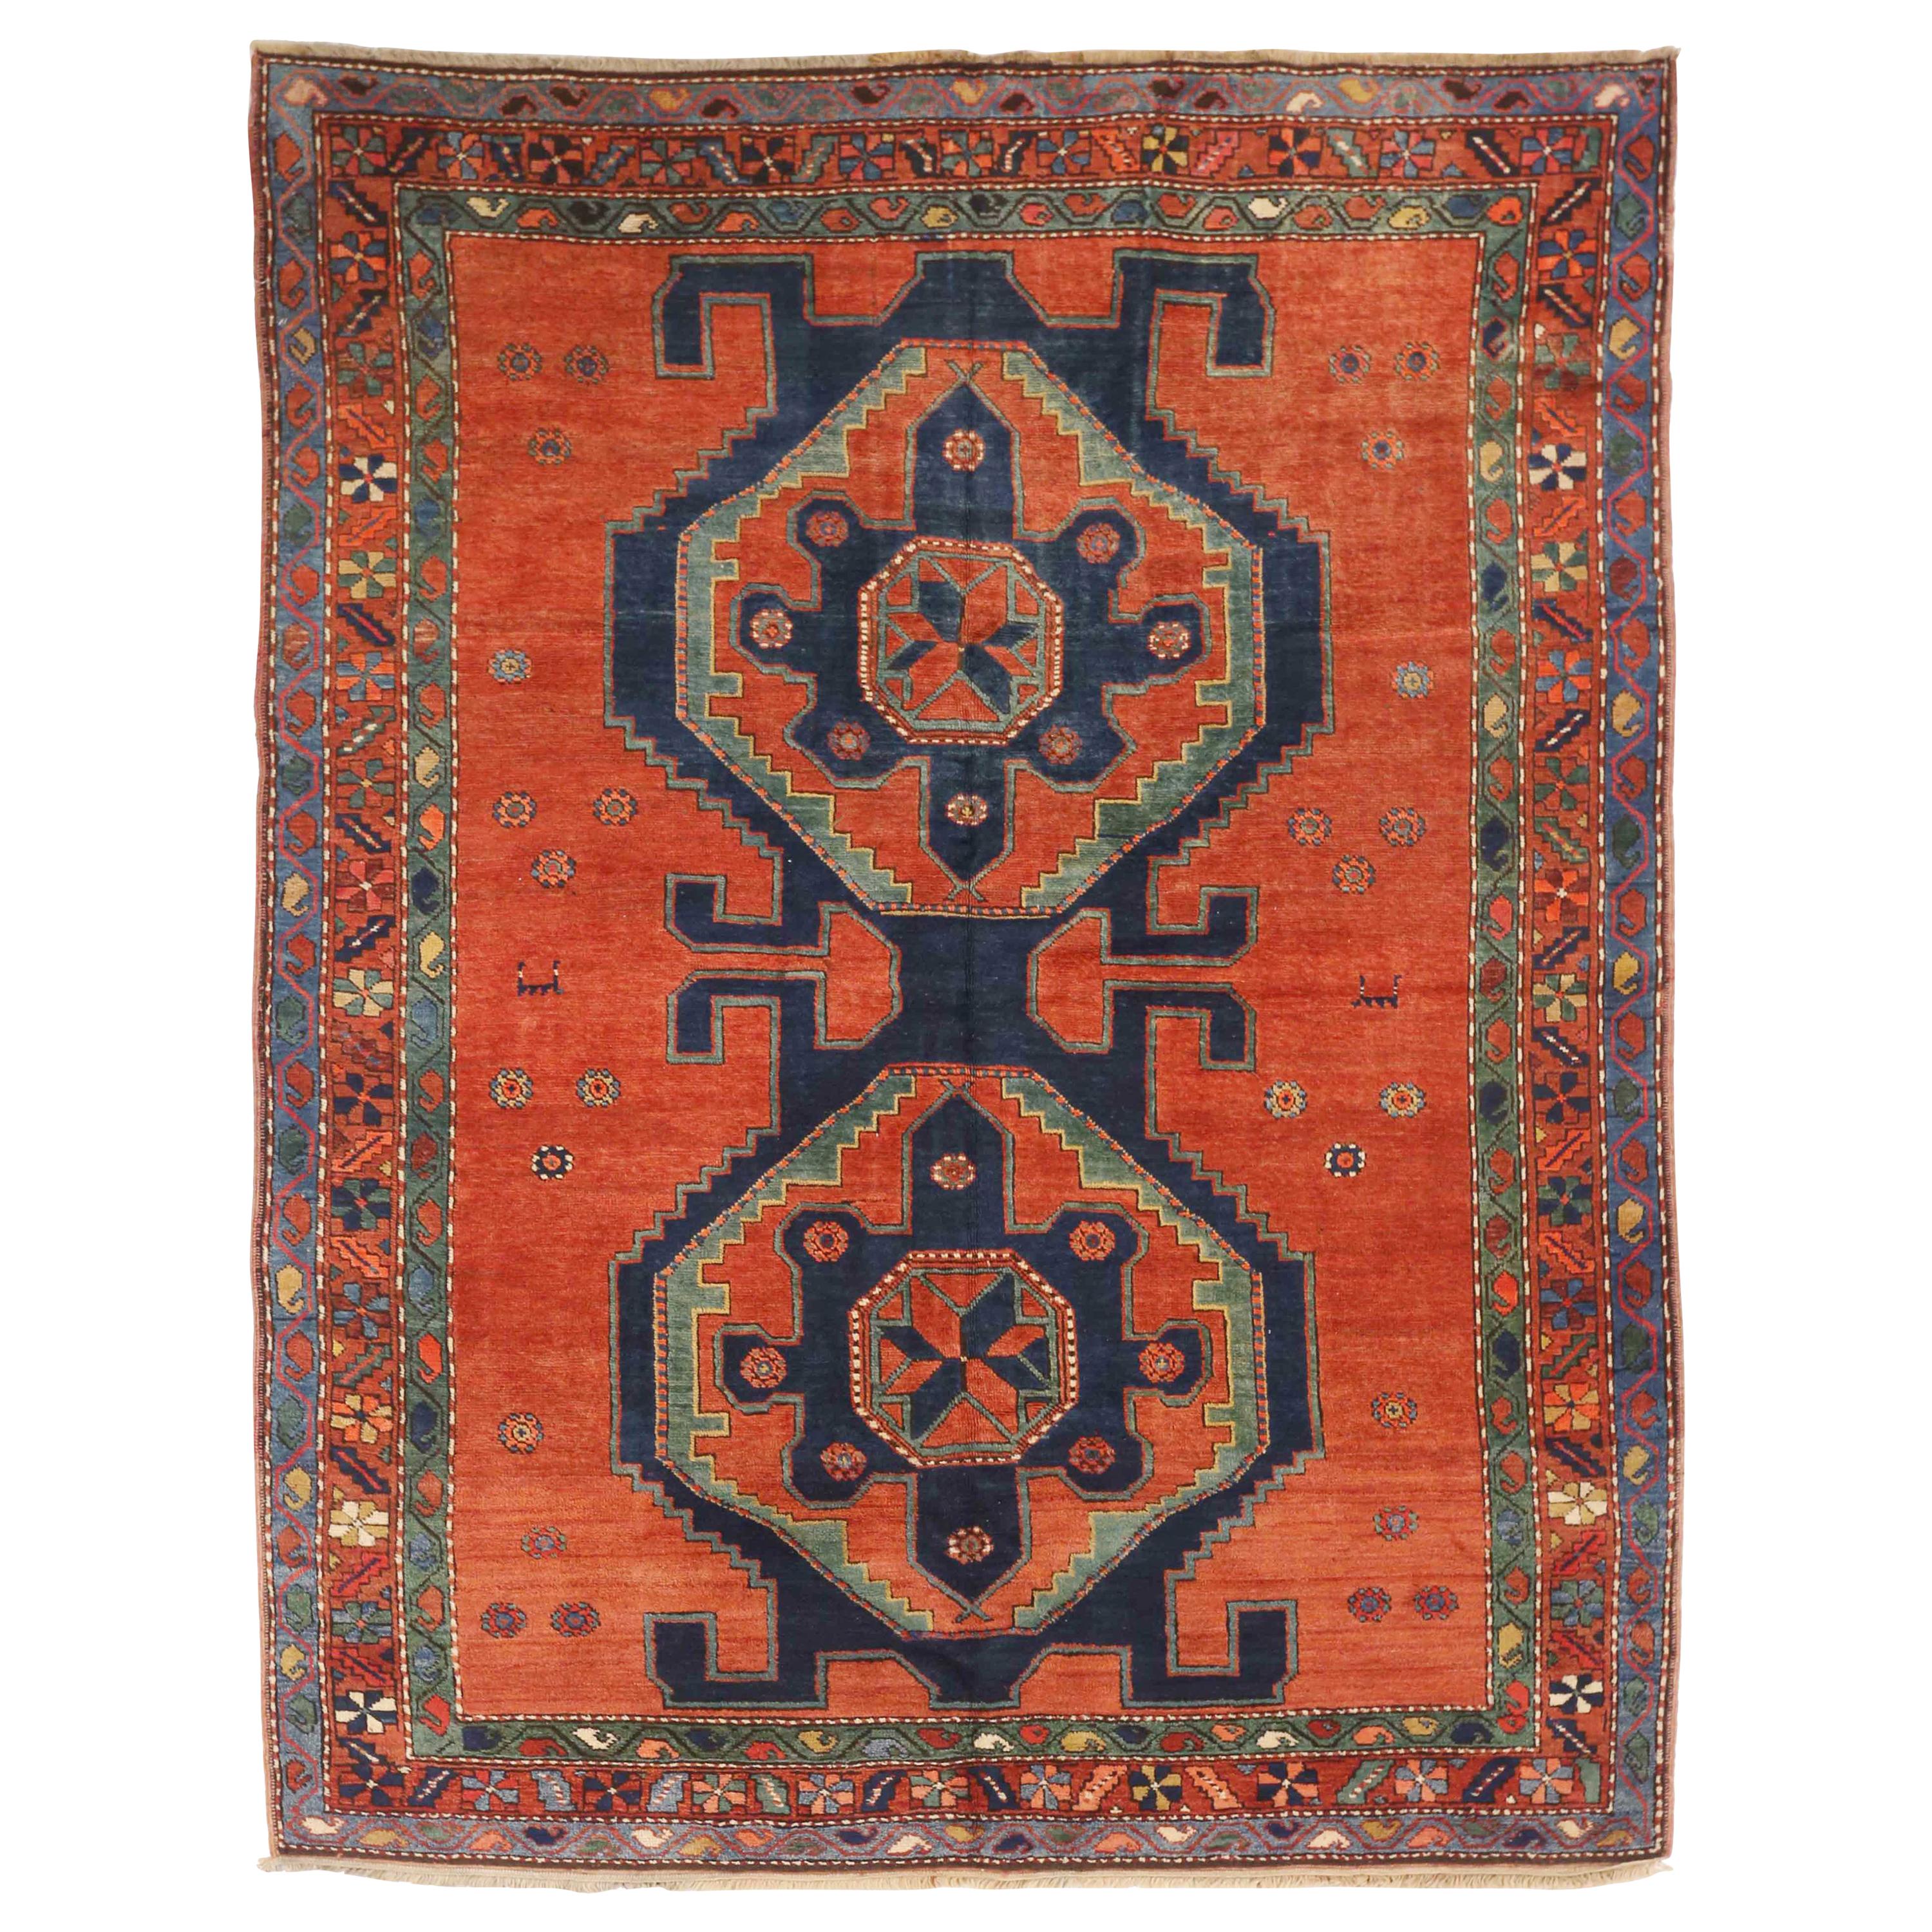 Antiker russischer Teppich im Kazak-Design